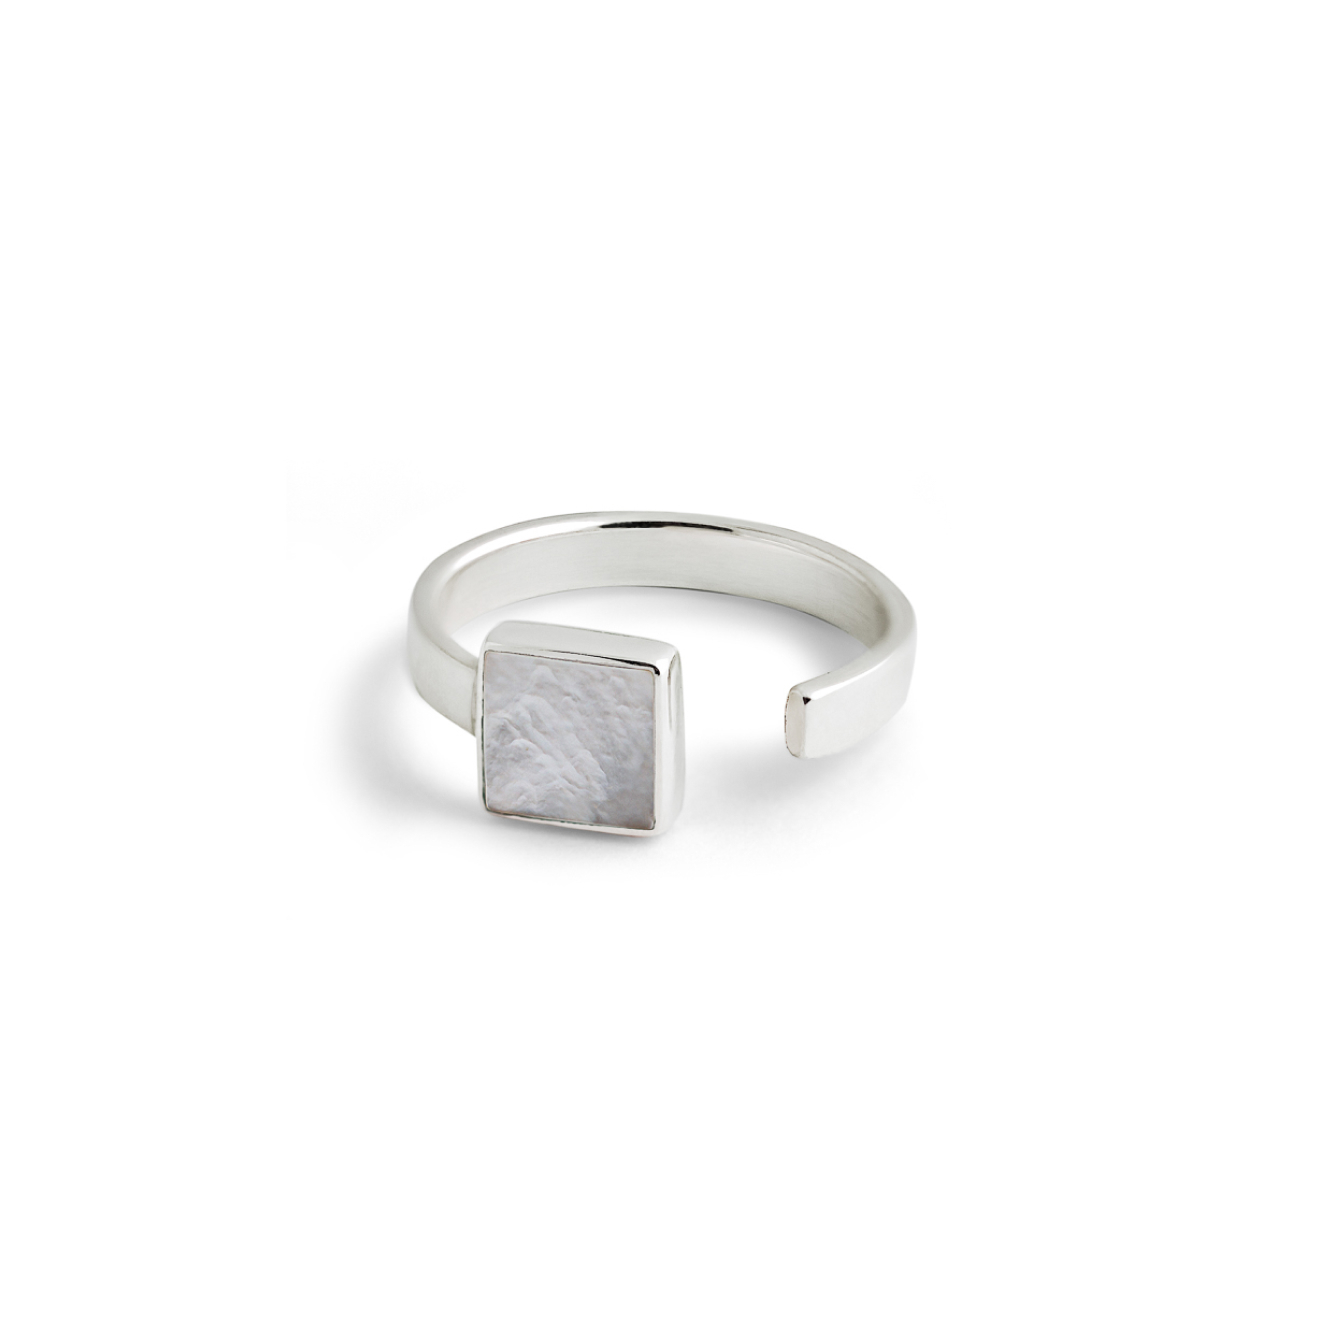 Wishes Come True Незамкнутое кольцо с квадратом из серебра со светлым плоским перламутром